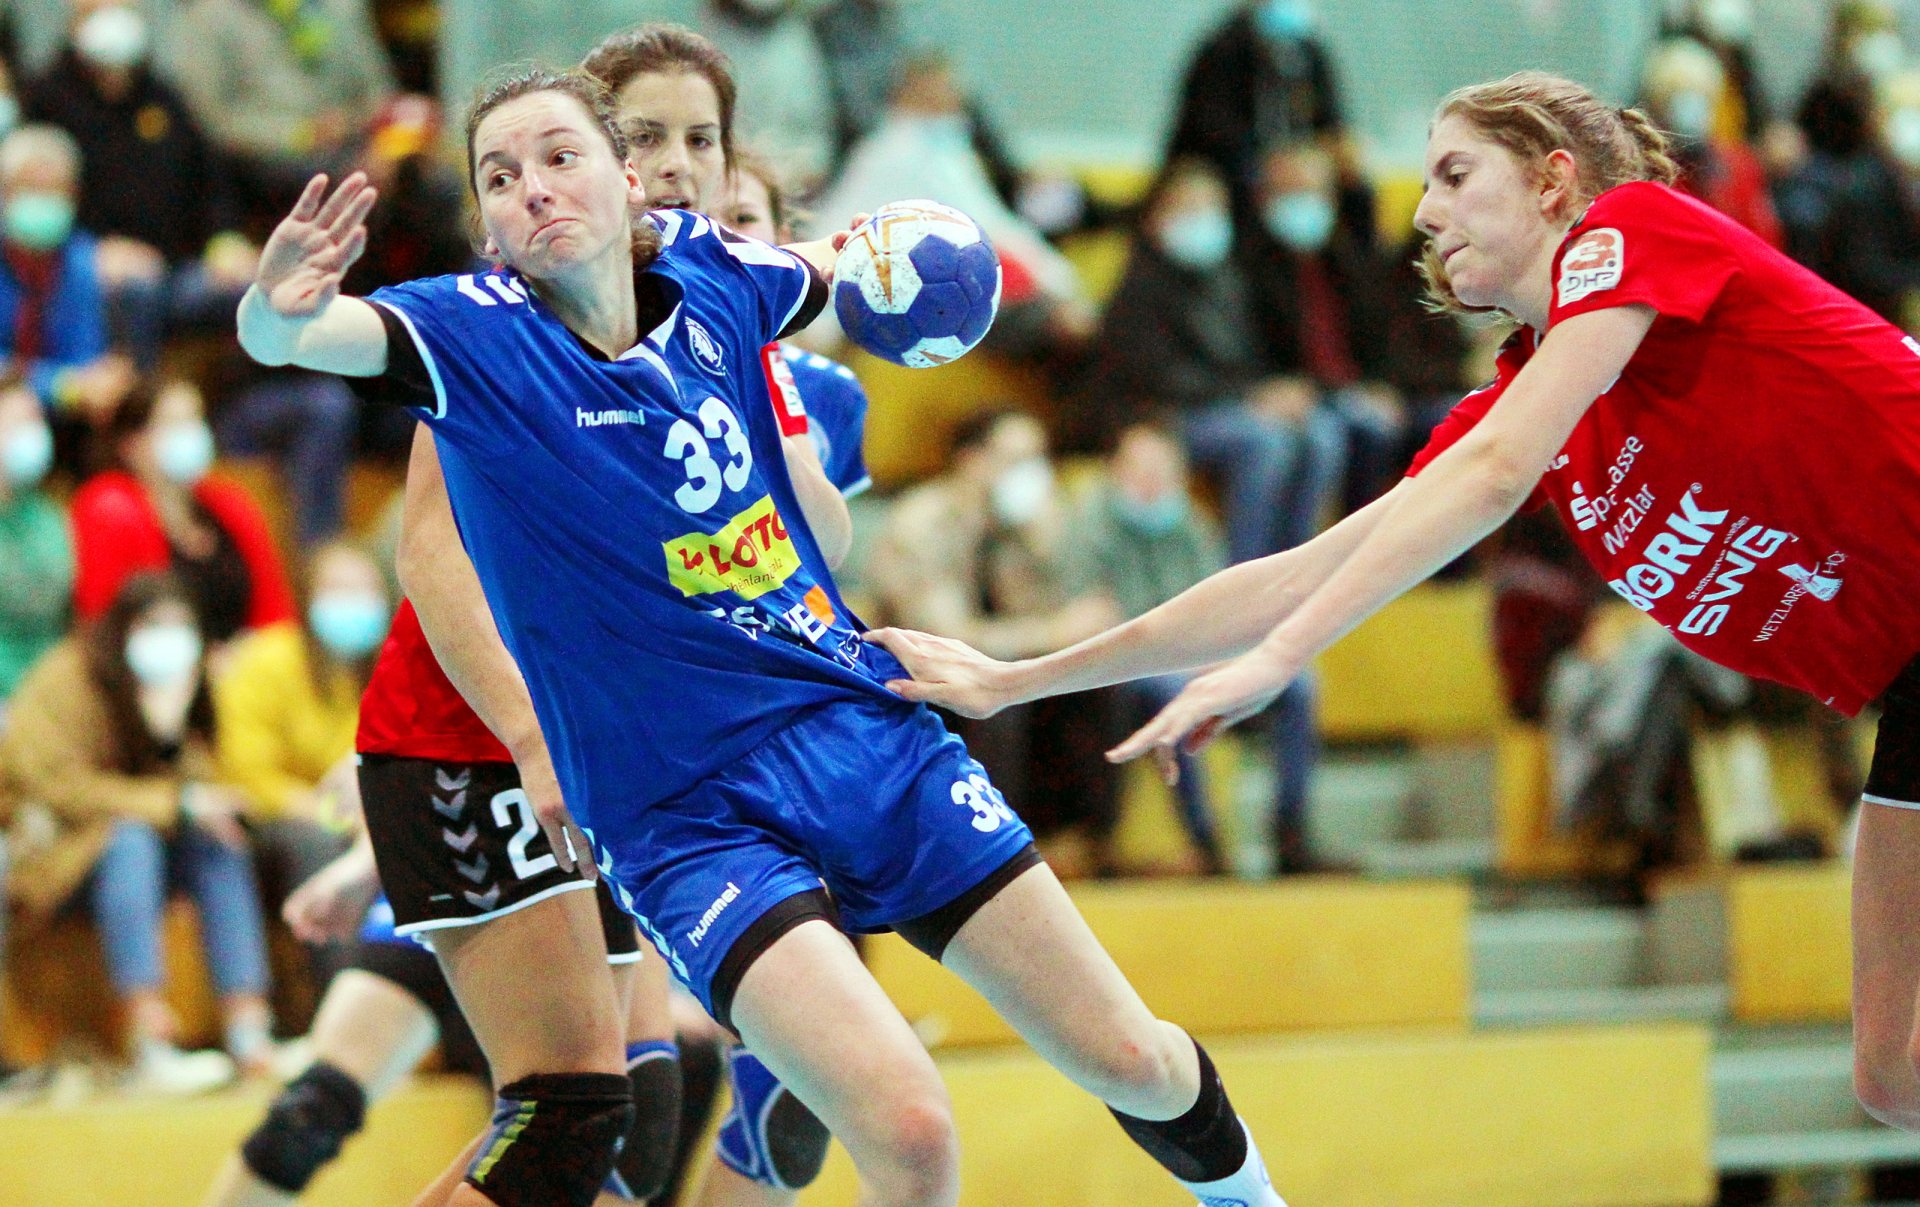 Das sportlich erfolgreichste Mainzer Handballteam der laufenden Runde ist Frauen-Drittligist SG TSG/DJK Bretzenheim (im Bild: Josi Dingeldein), der eine verlustpunktfreie Hinrunde hinlegte und dem zweiten Zweitligaaufstieg nach 2015 entgegenstrebt.